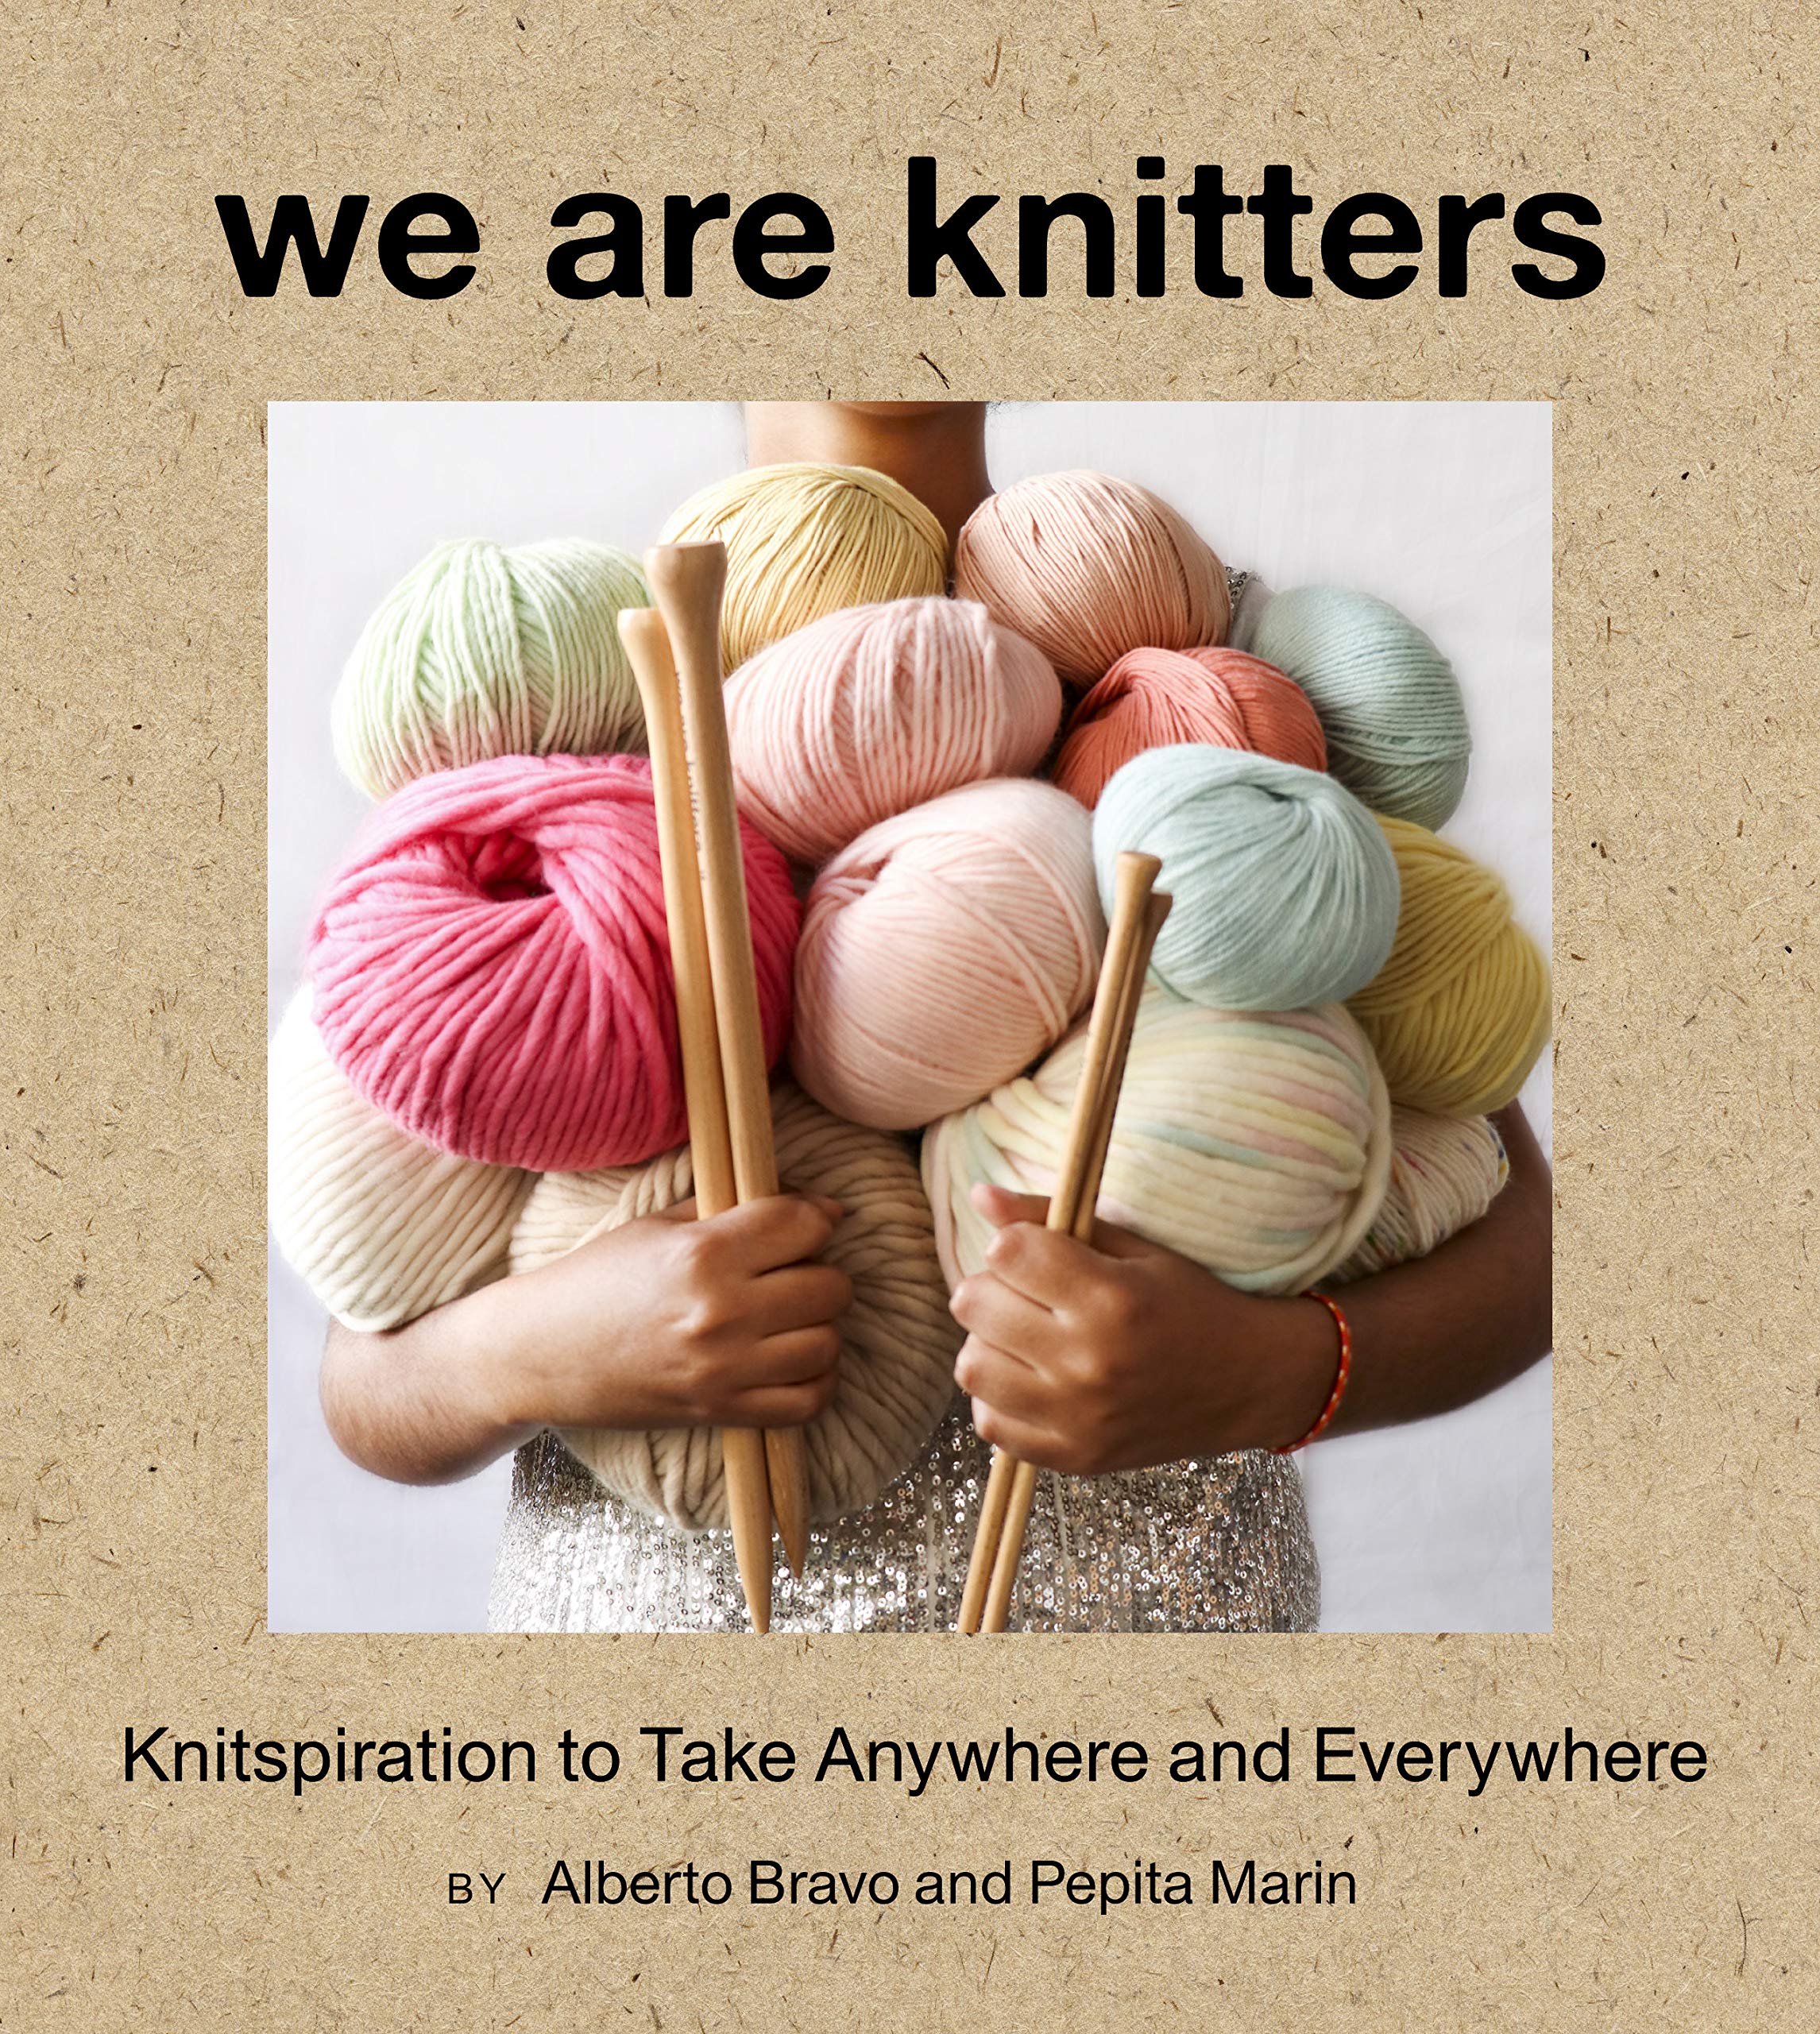 We Are Knitters by Alberto Bravo & Pepita Marin